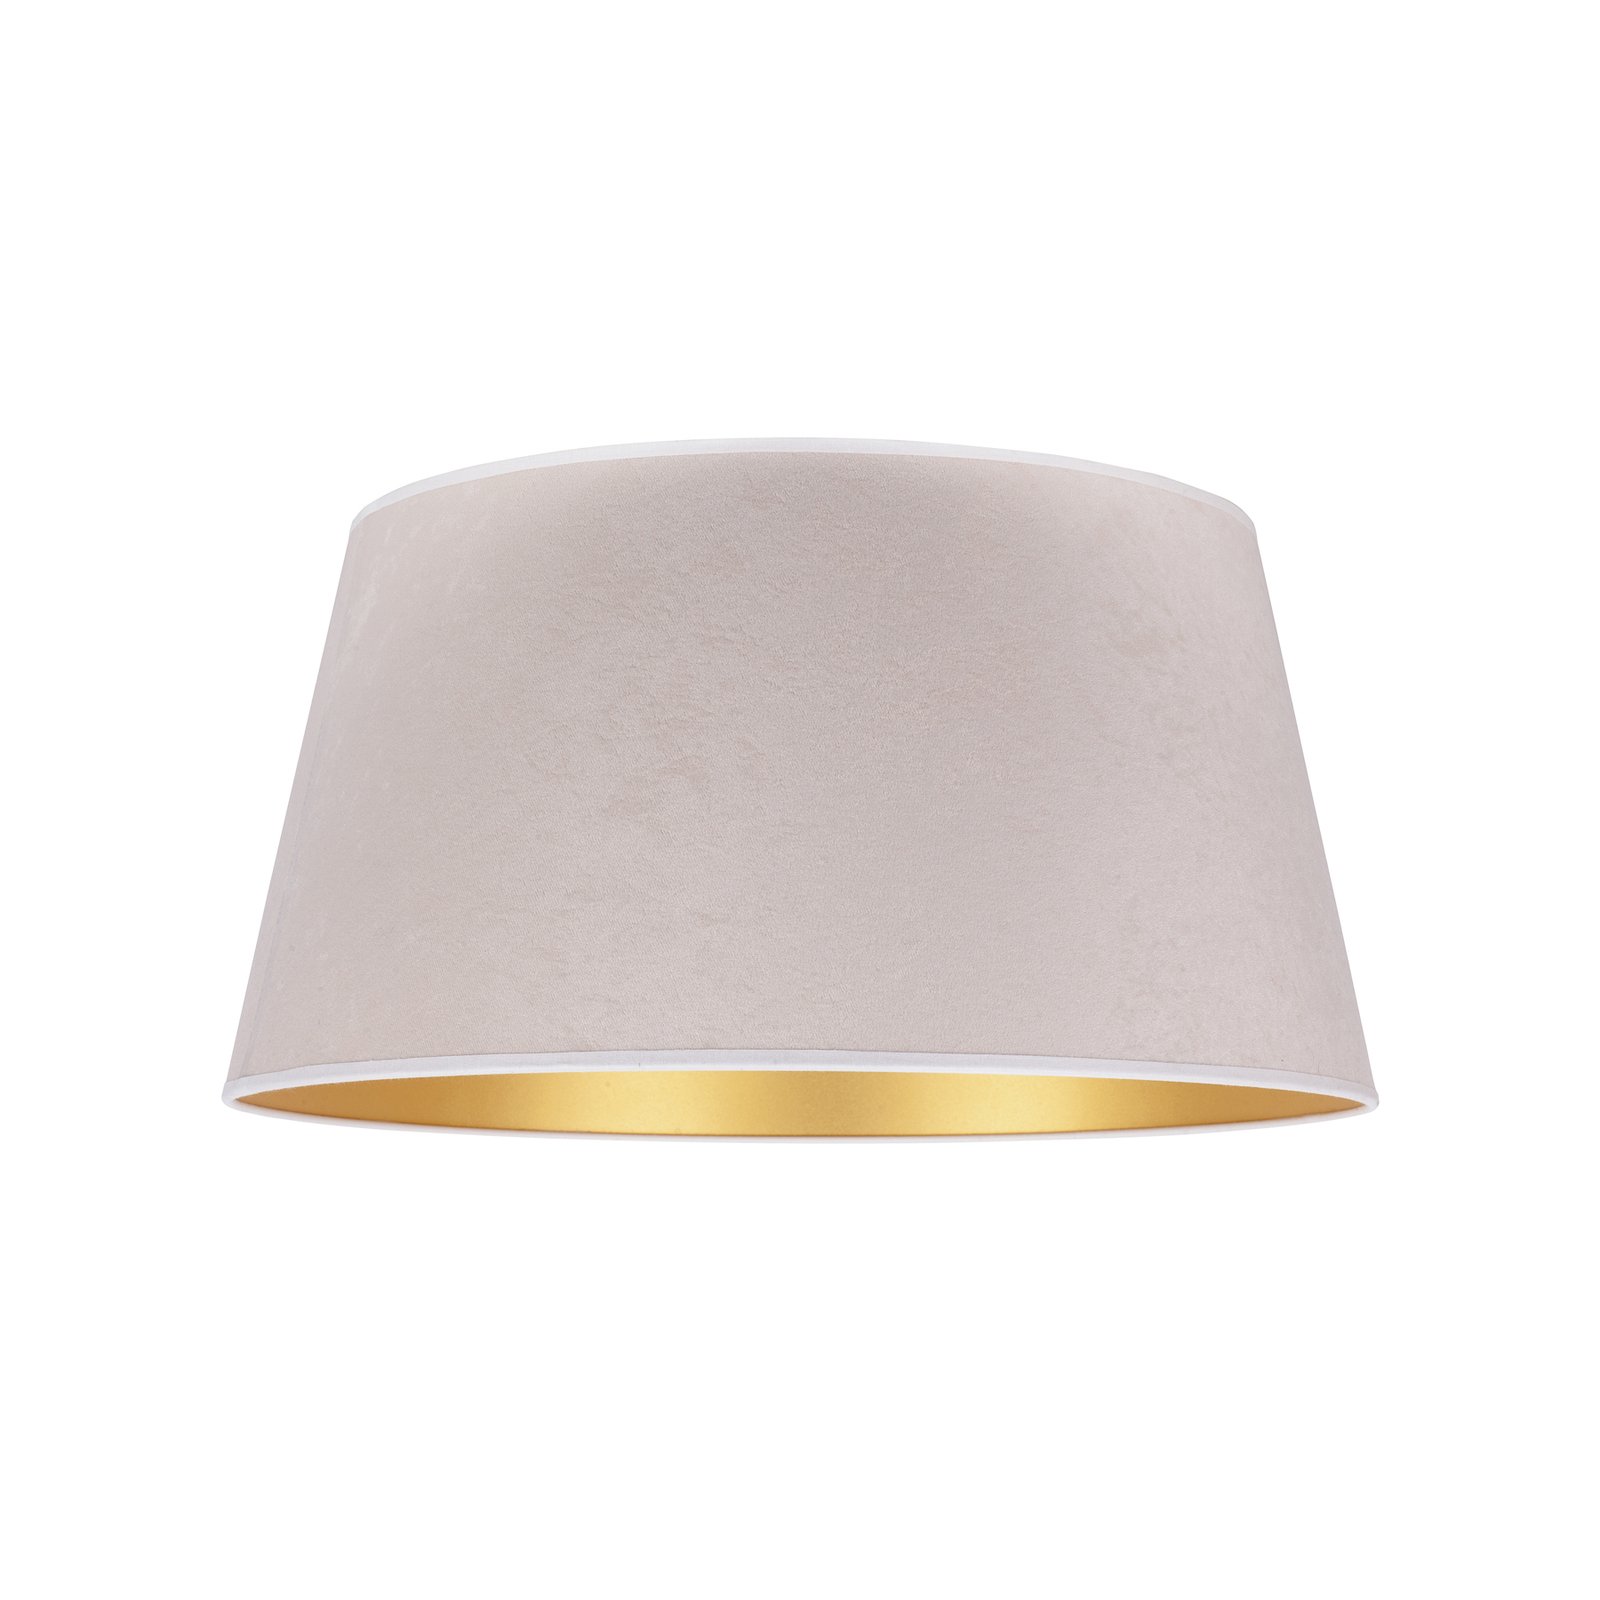 Cone lámpaernyő 25,5 cm magas, ekrü/arany